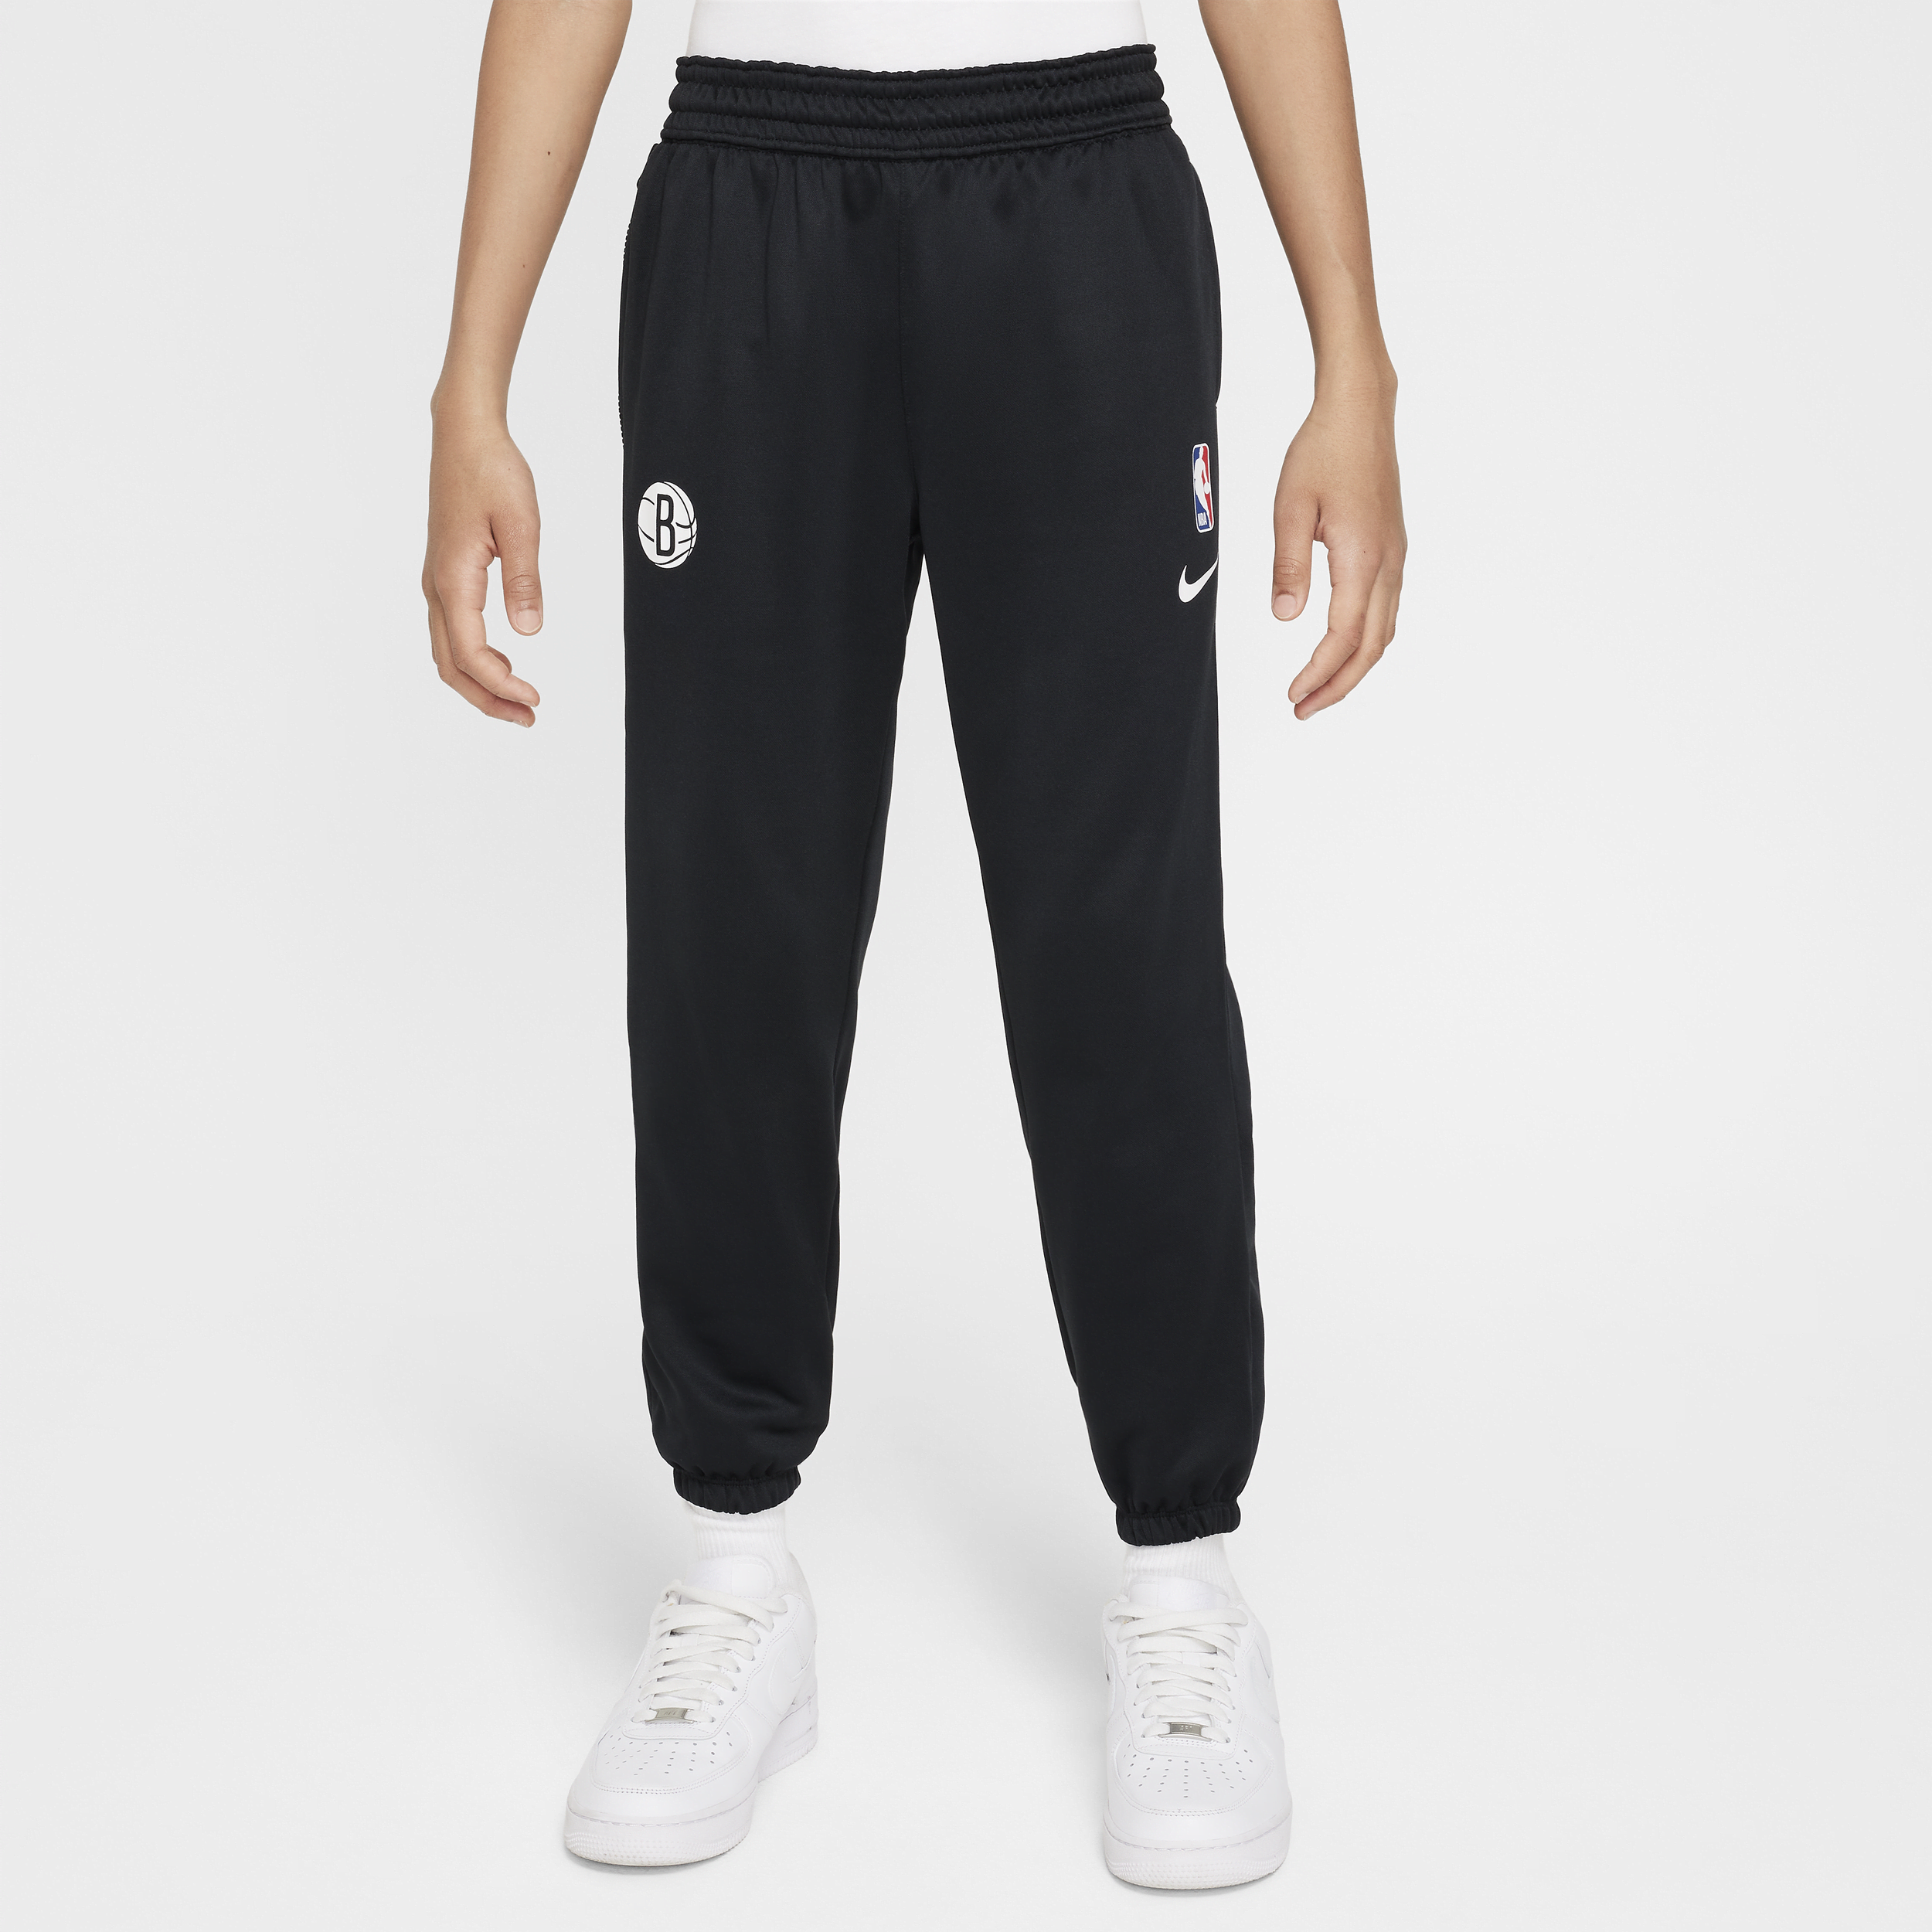 Pantaloni Brooklyn Nets Spotlight Nike Dri-FIT NBA – Ragazzo/a - Nero